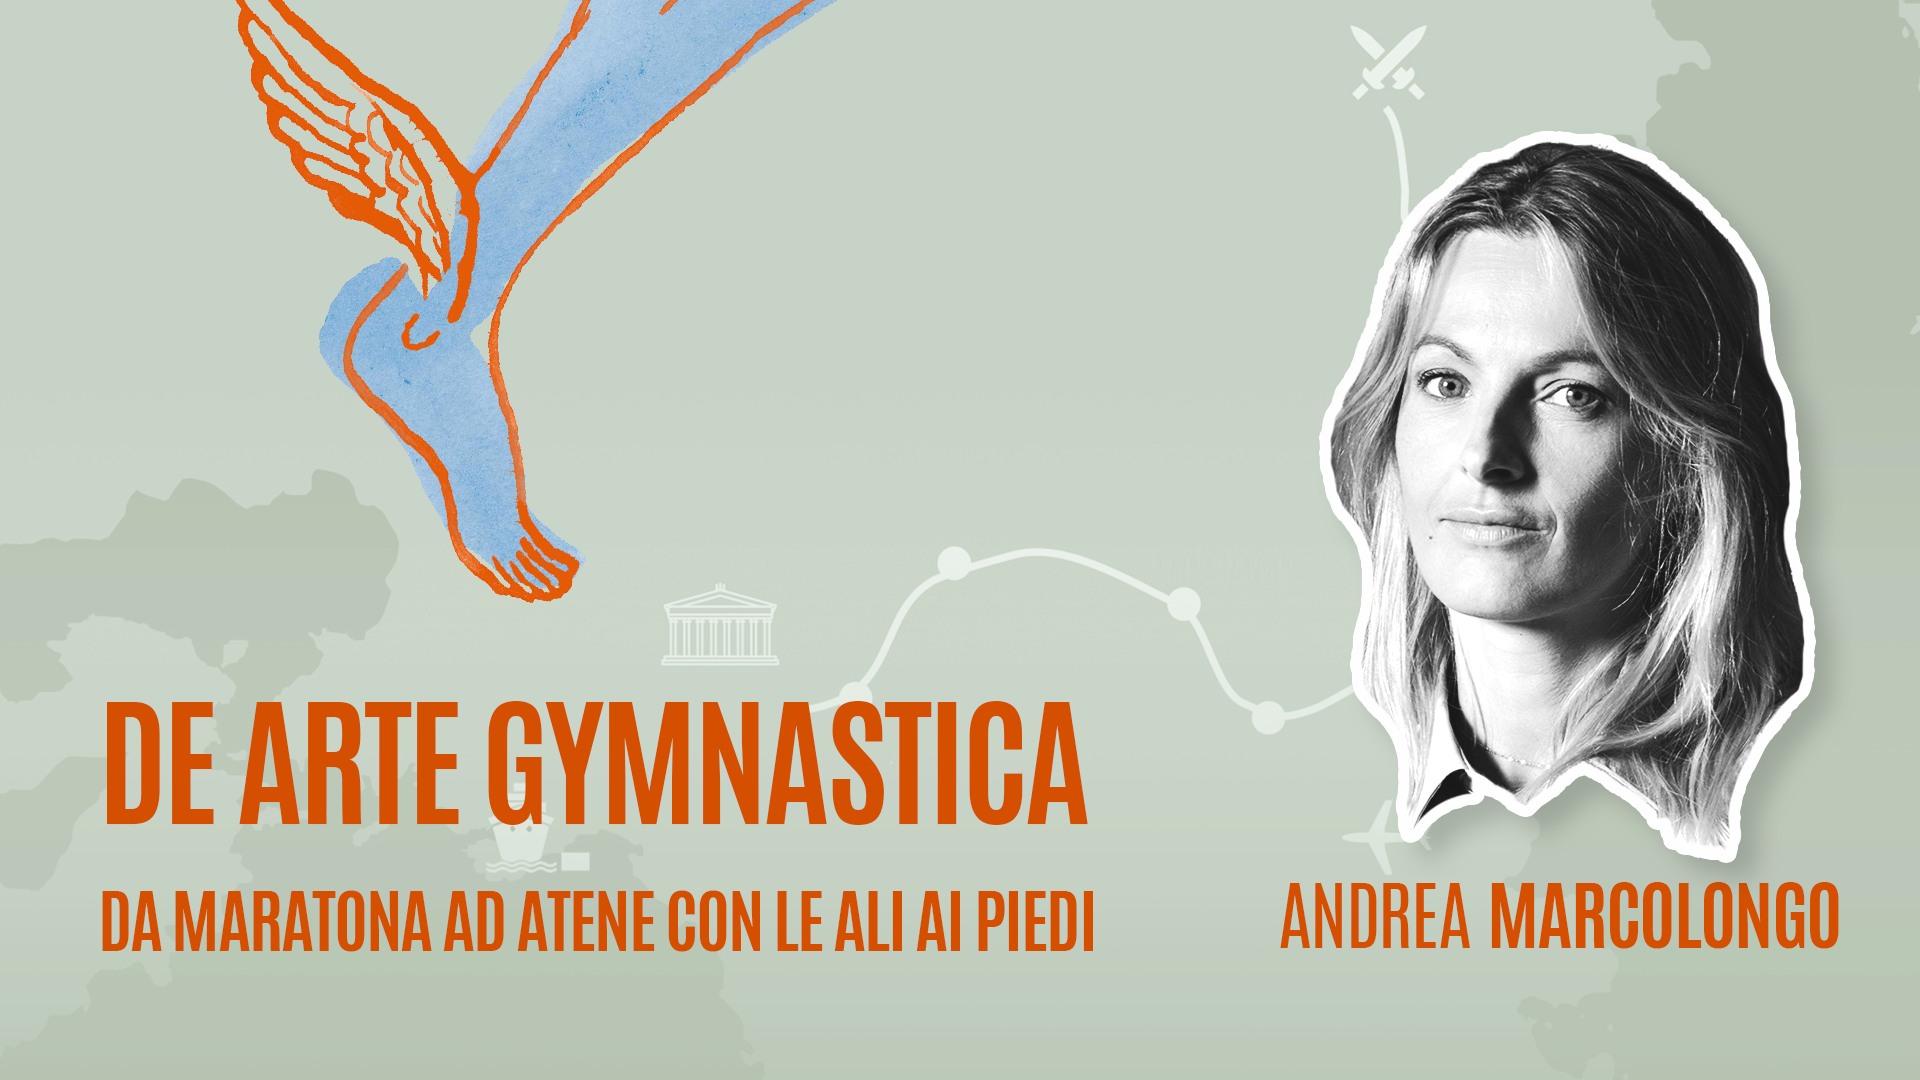 Andrea Marcolongo racconta “De arte gymnastica”